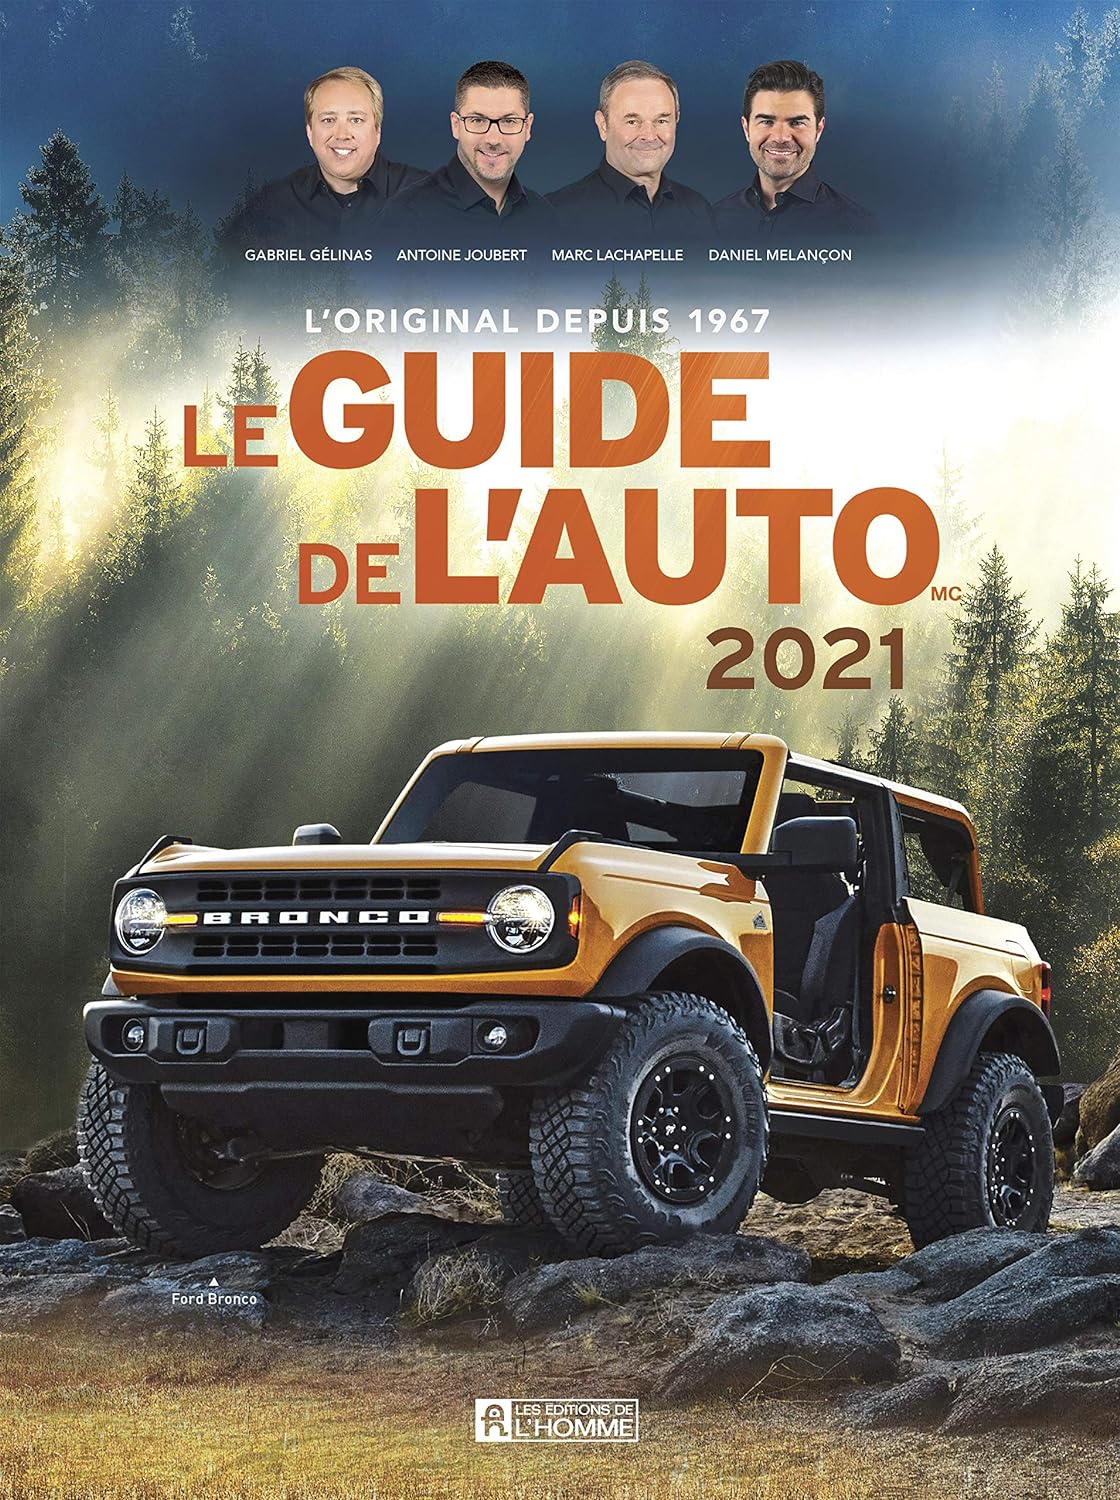 Le Guide de l'Auto 2021 - Gabriel Gélinas